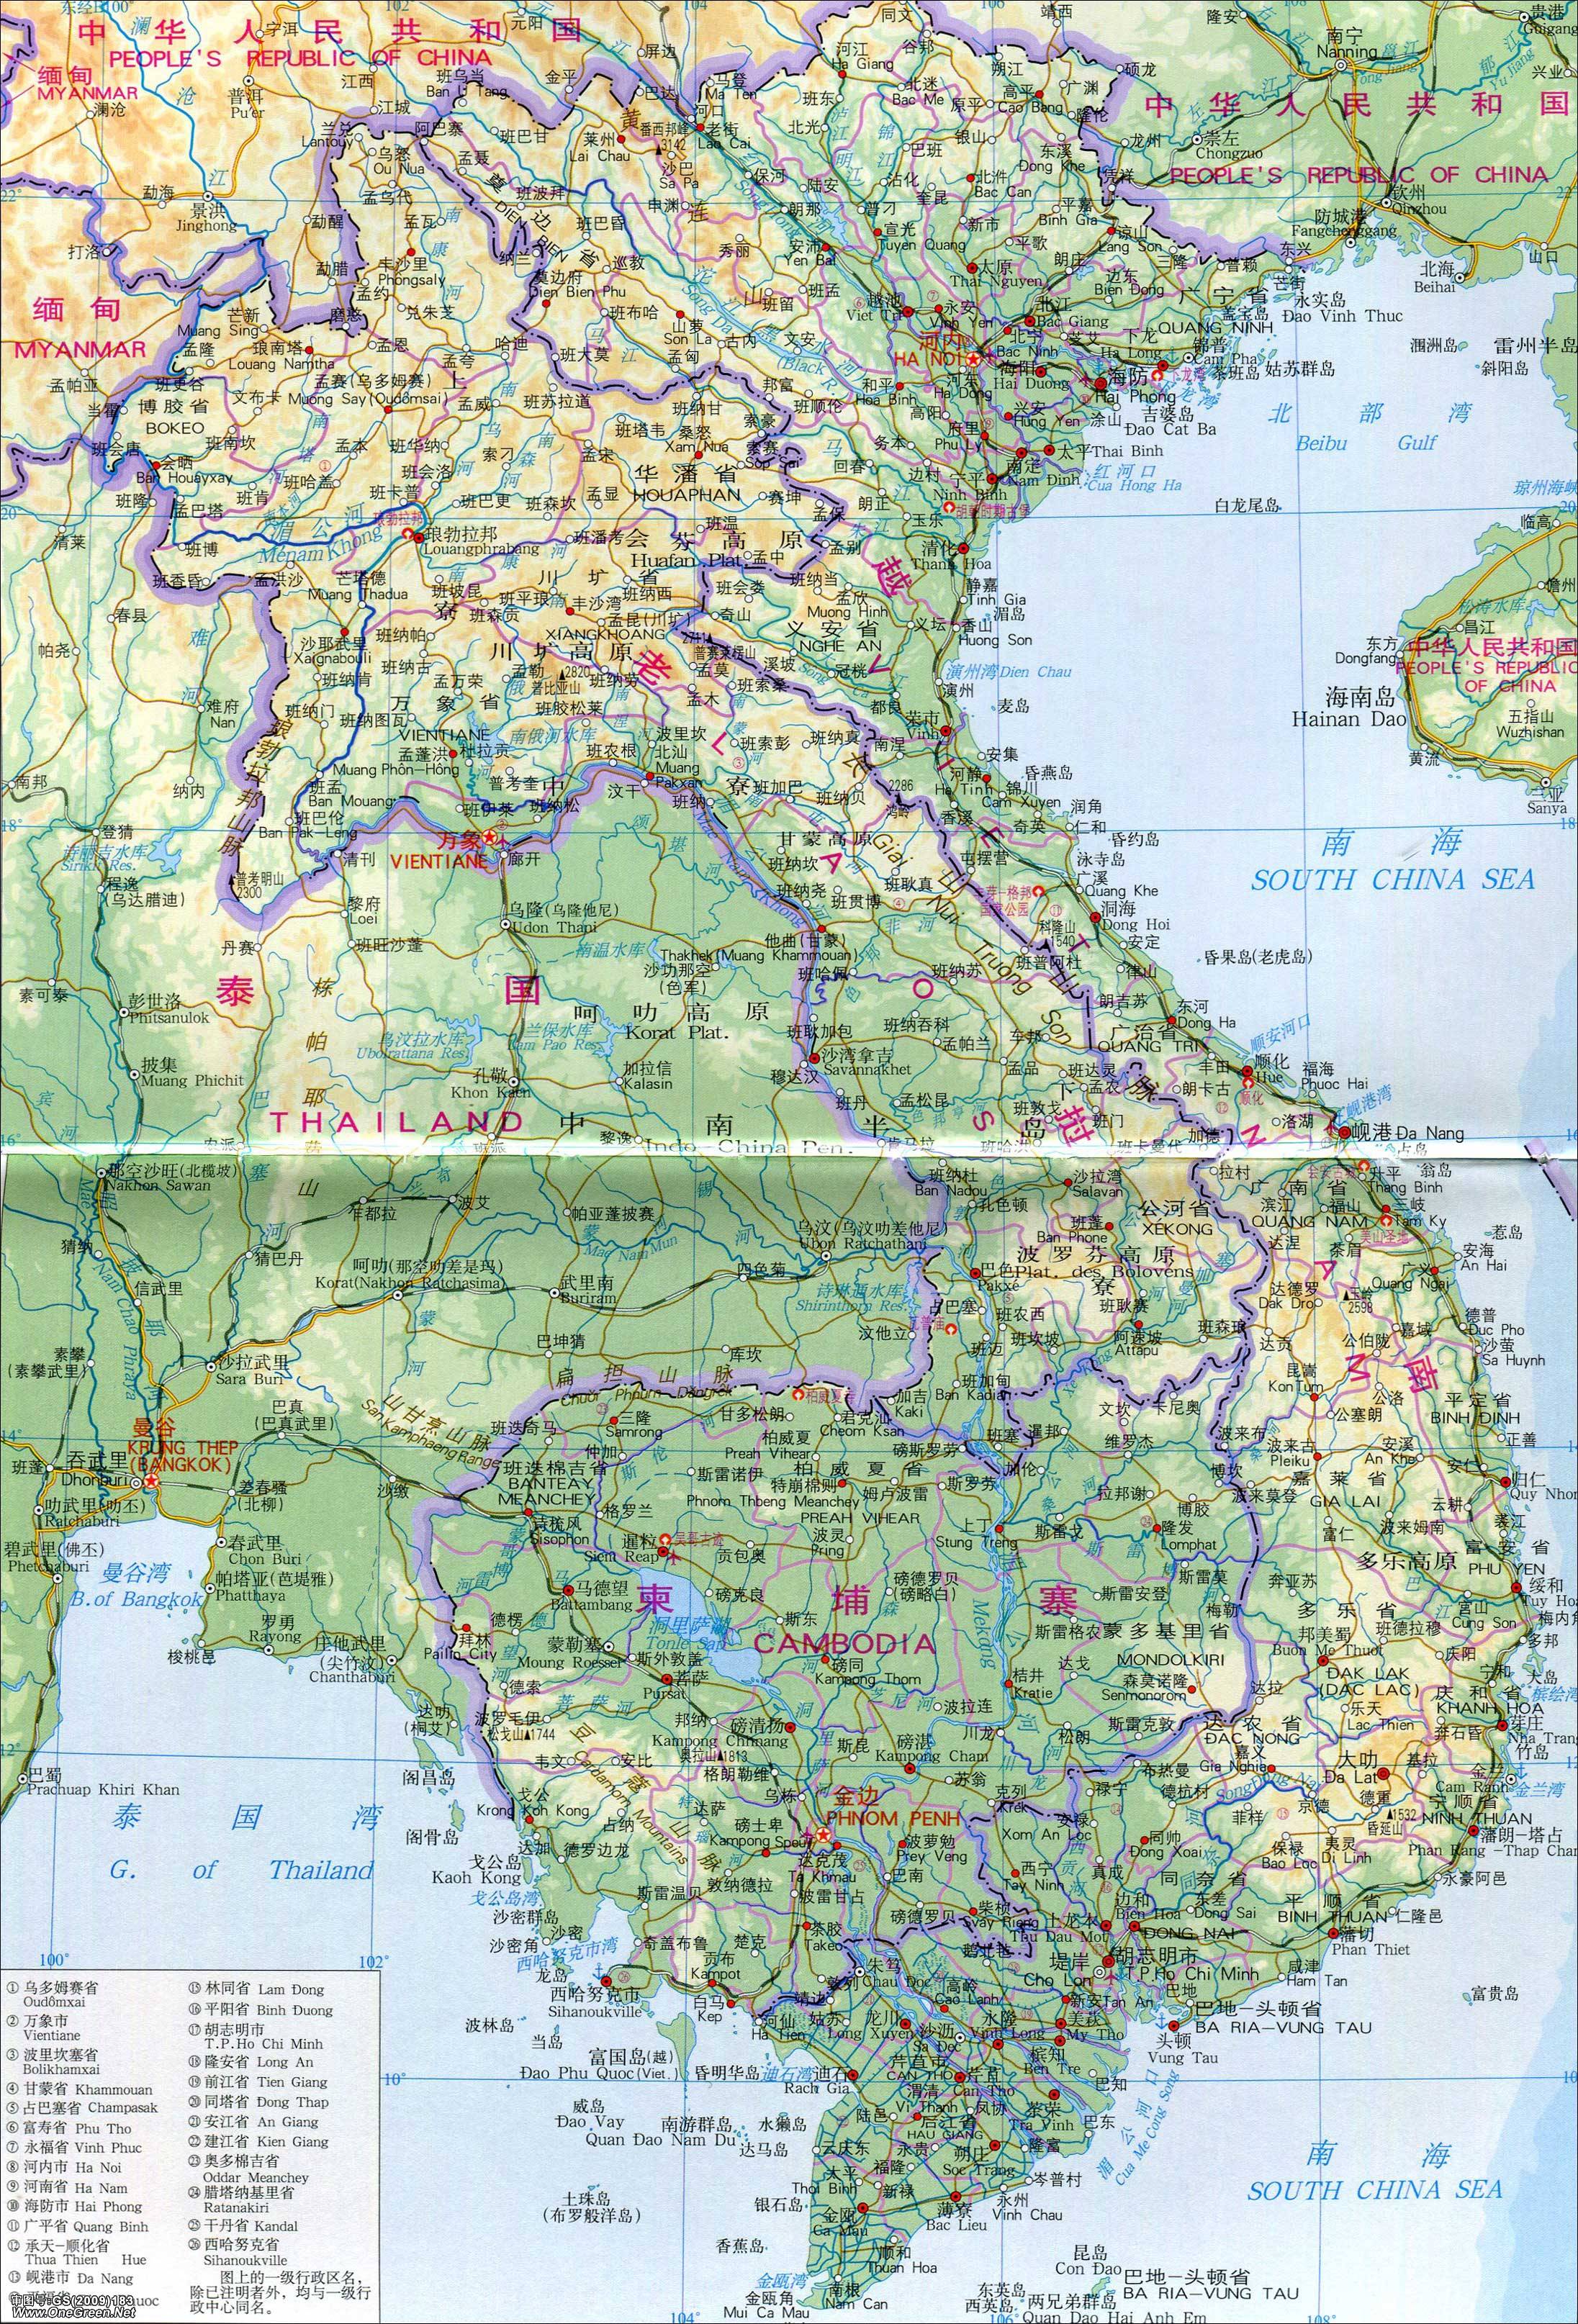 新加坡  马来西亚  泰国  朝鲜  蒙古  越南  老挝  柬埔寨  缅甸图片